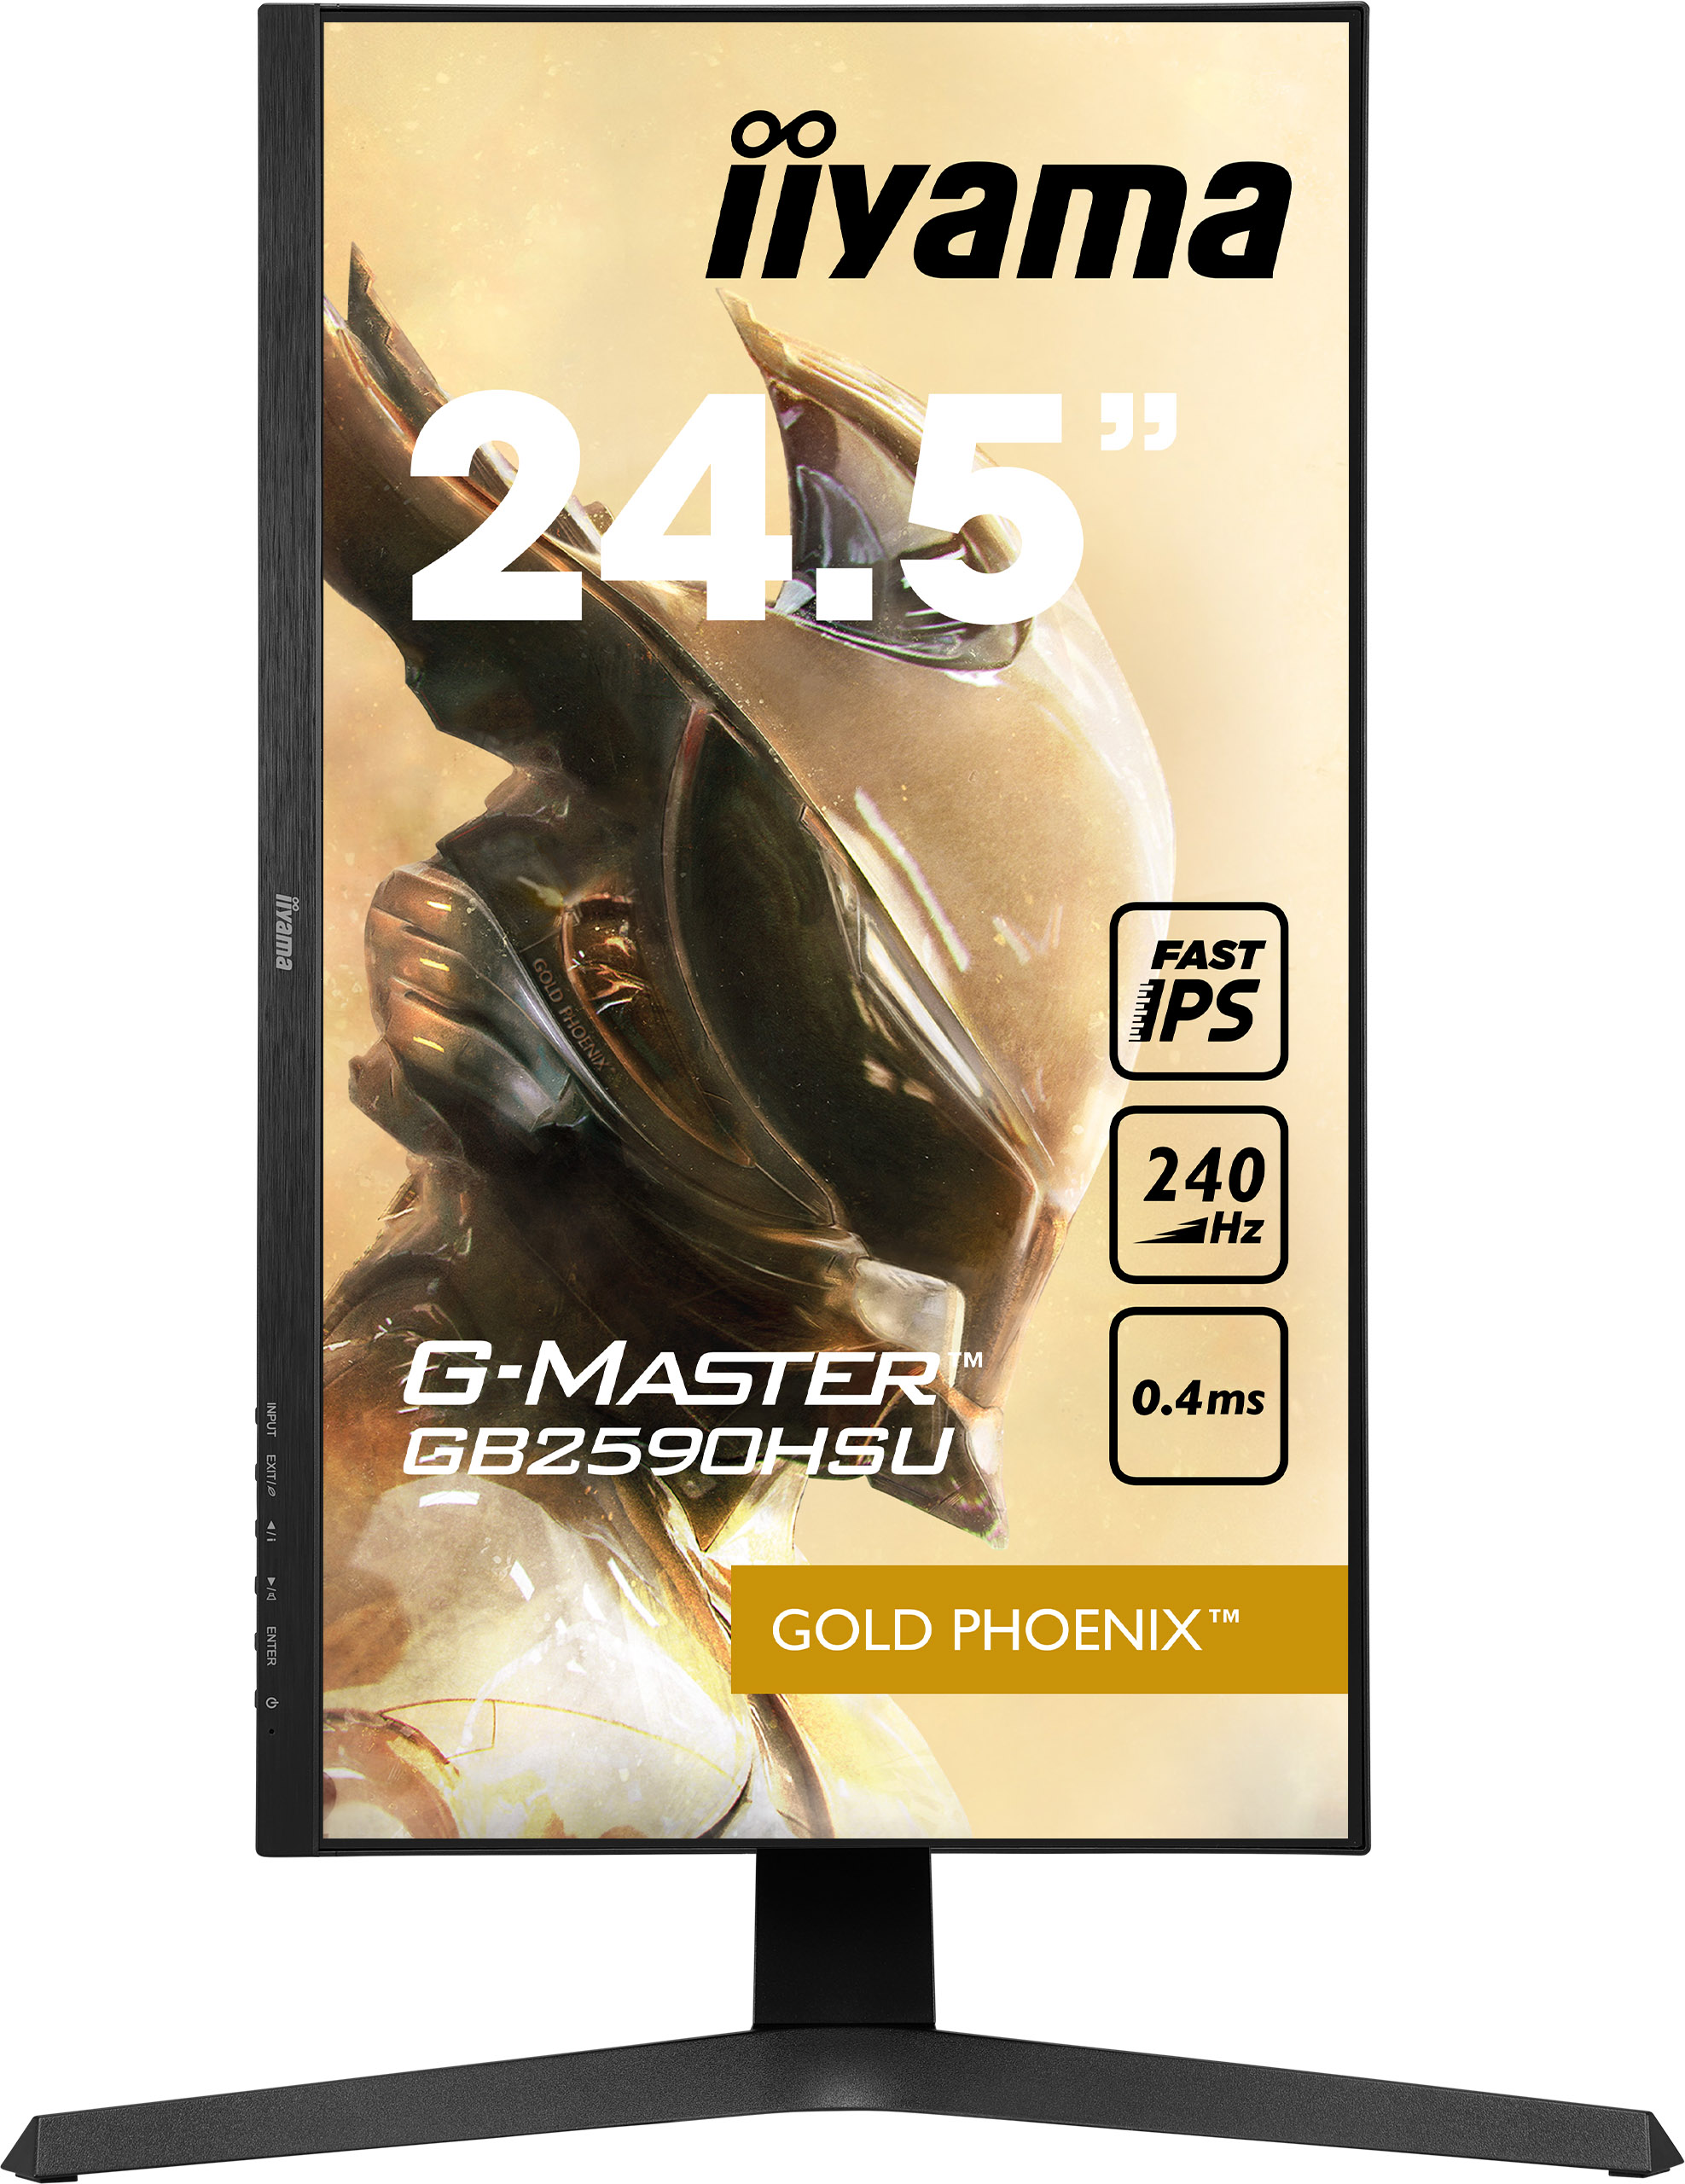 Iiyama G-MASTER GB2590HSU-B1 GOLD PHOENIX | 24,5" | 1920 x 1080 @240Hz (2.1 megapixel Full HD) | Gaming Monitor